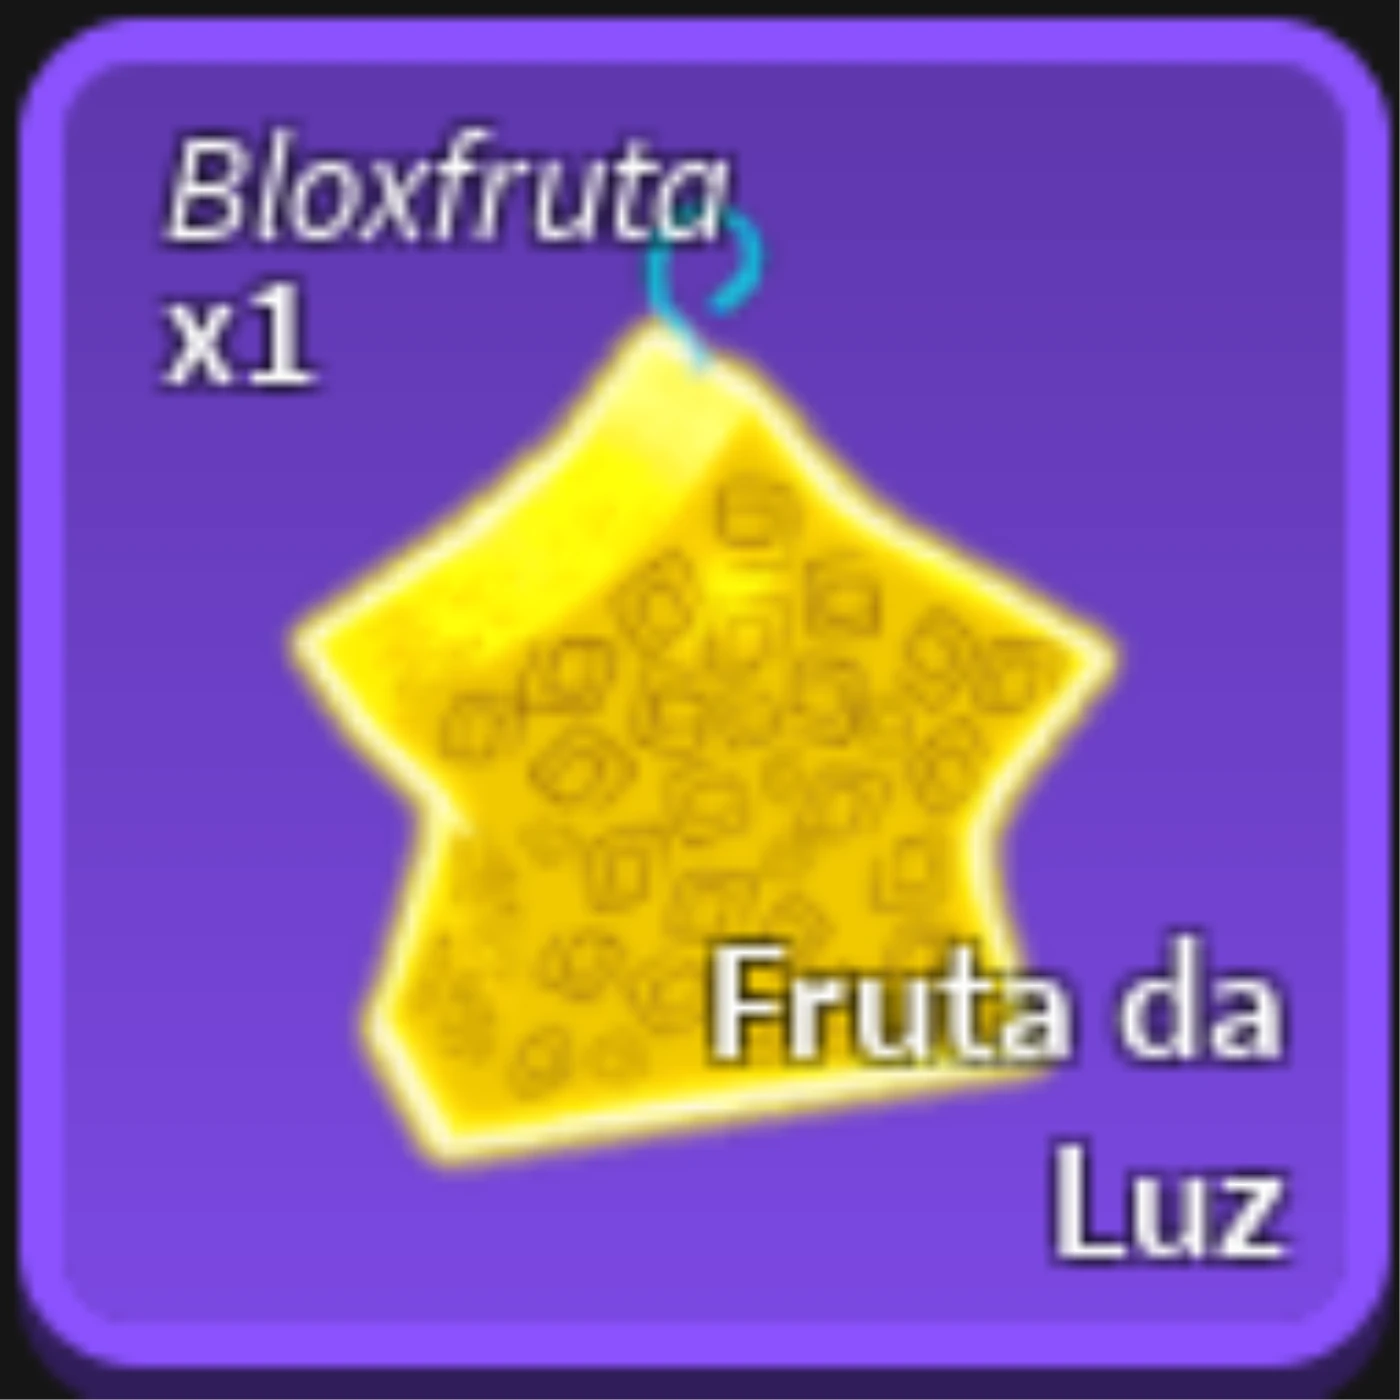 Script Blox Fruits - Dluz Games